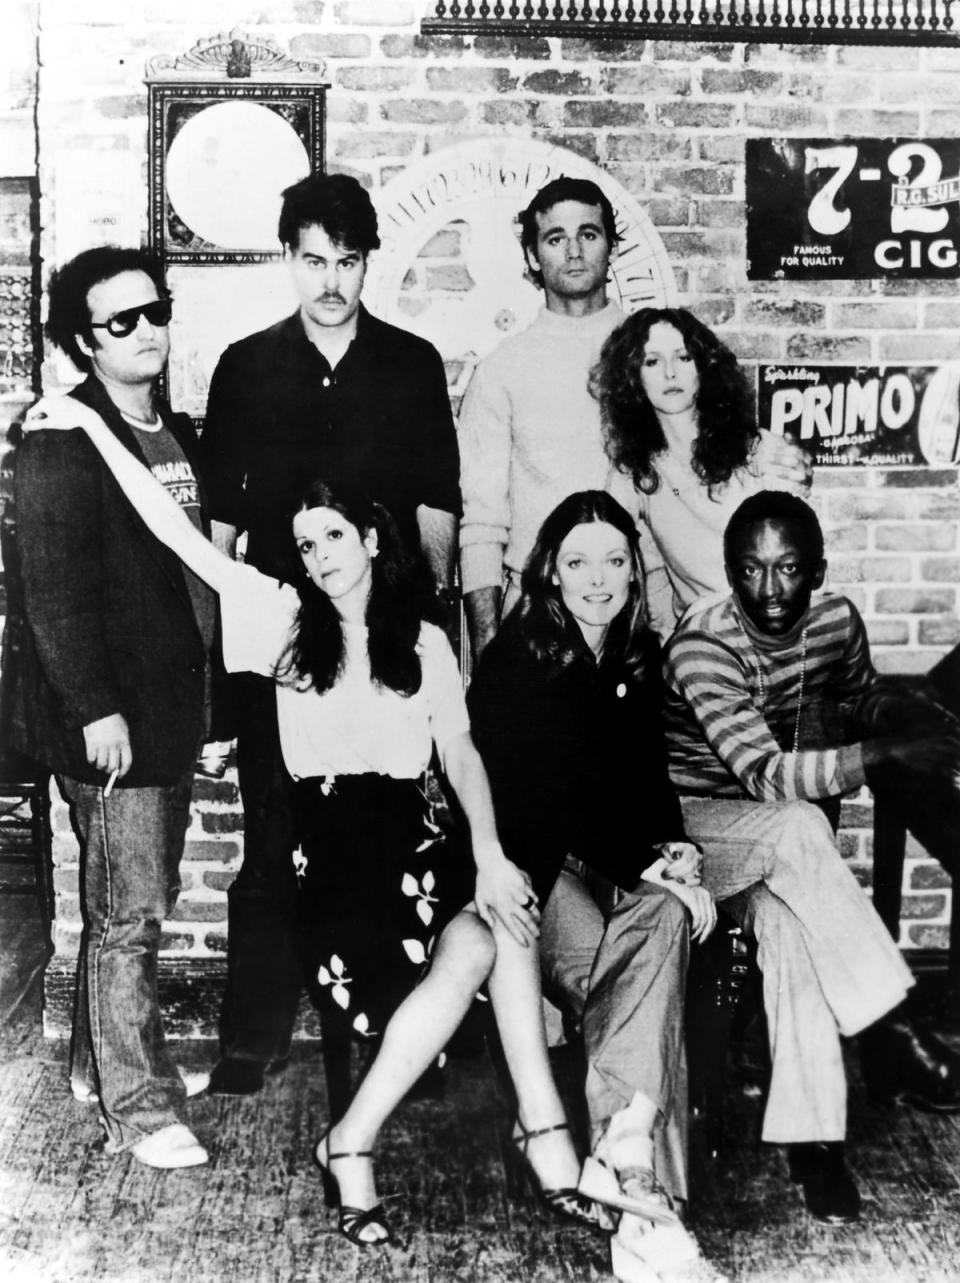 Saturday Night Live, 1977. Left To Right: (Standing) John Belushi, Dan Aykroyd, Bill Murray, Laraine Newman; (Seated) Gilda Radner, Jane Curtin, Garrett Morris. (Granger/Shutterstock)